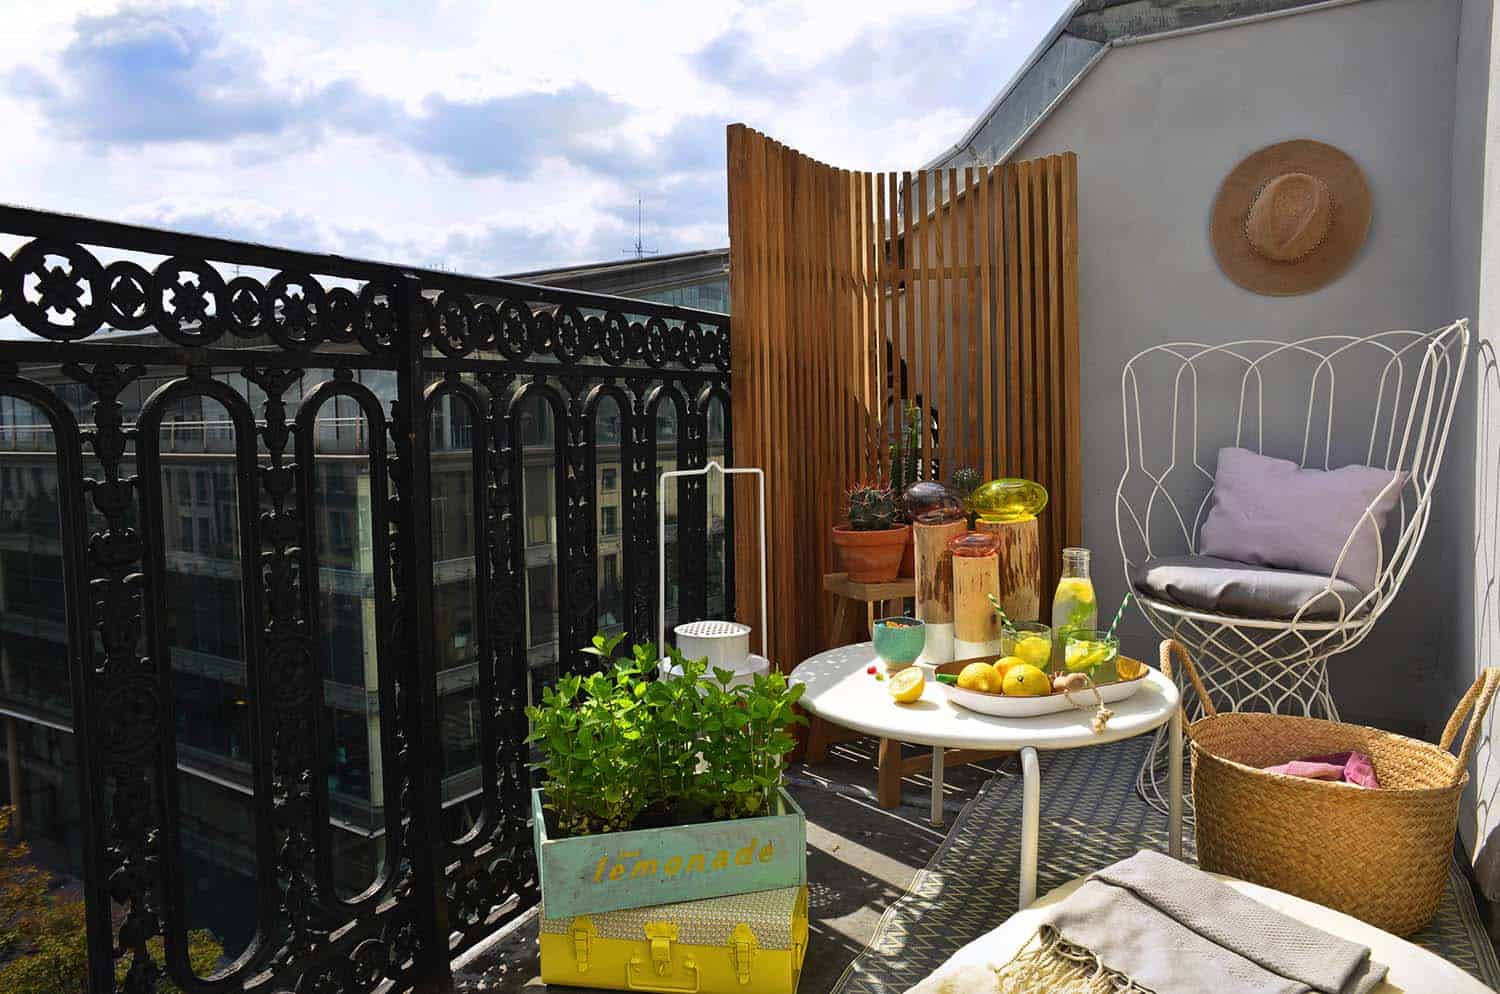 Geschlossener Balkon mit Strohwänden - eine feine und ästhetische Lösung